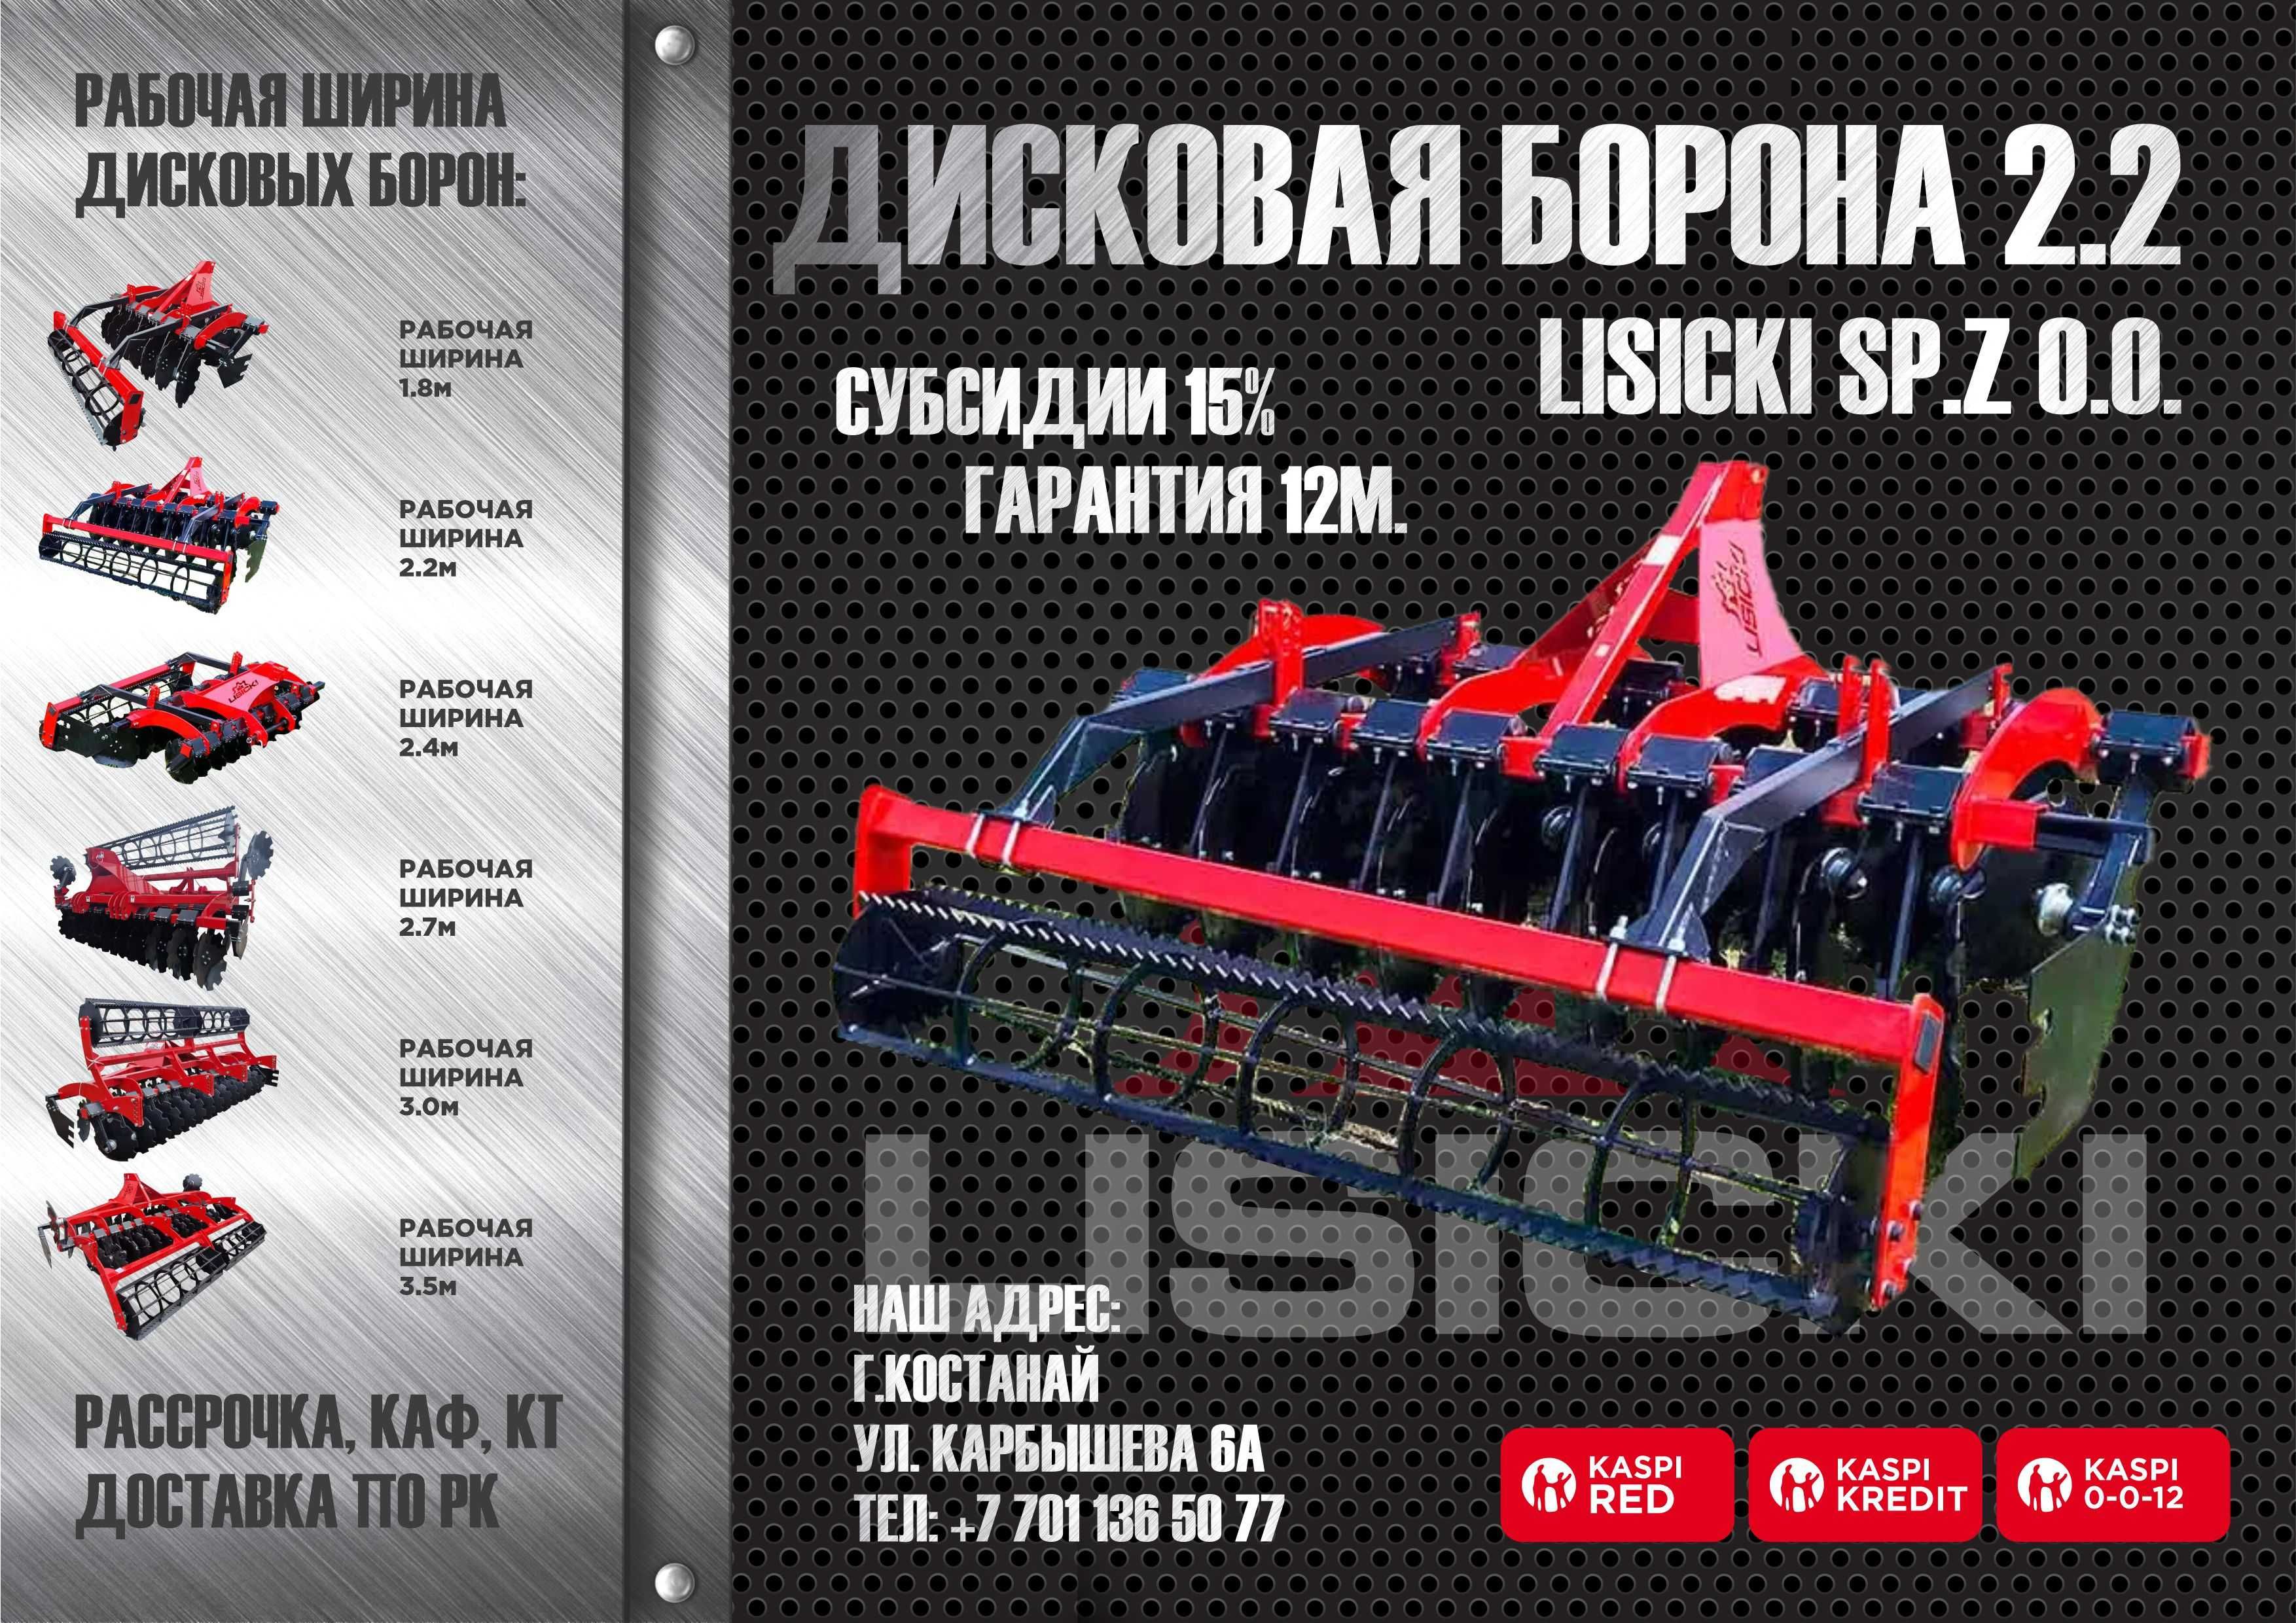 Дисковая борона (дискатор) Lisicki Лисицки 2.4м в Костанае от дилера